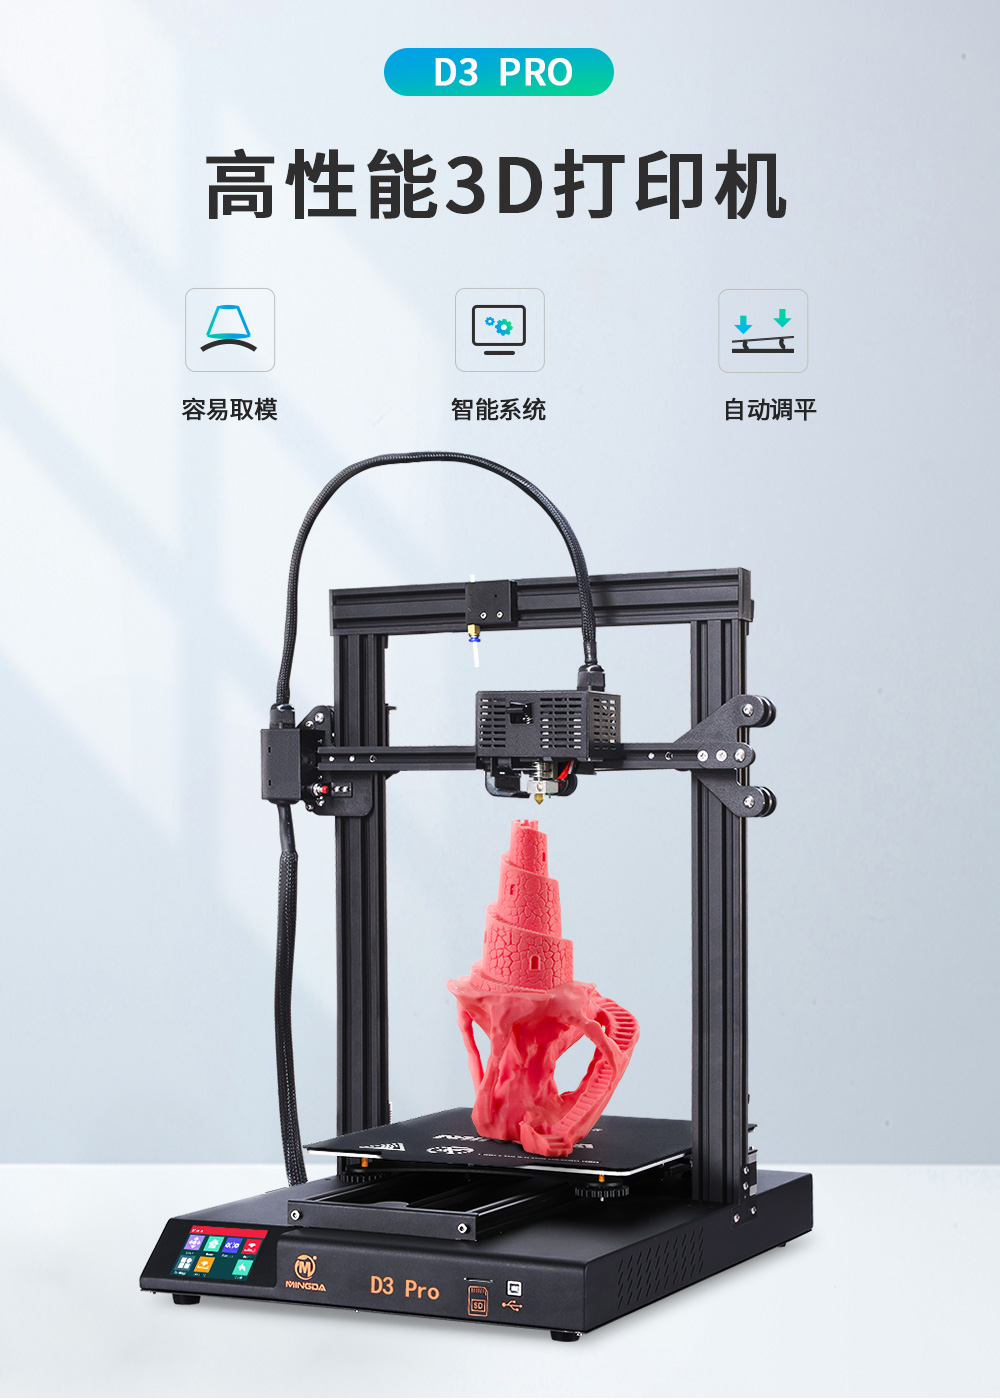 新品| 全新升级 D3 一体式专业级3D打印机 (图1)